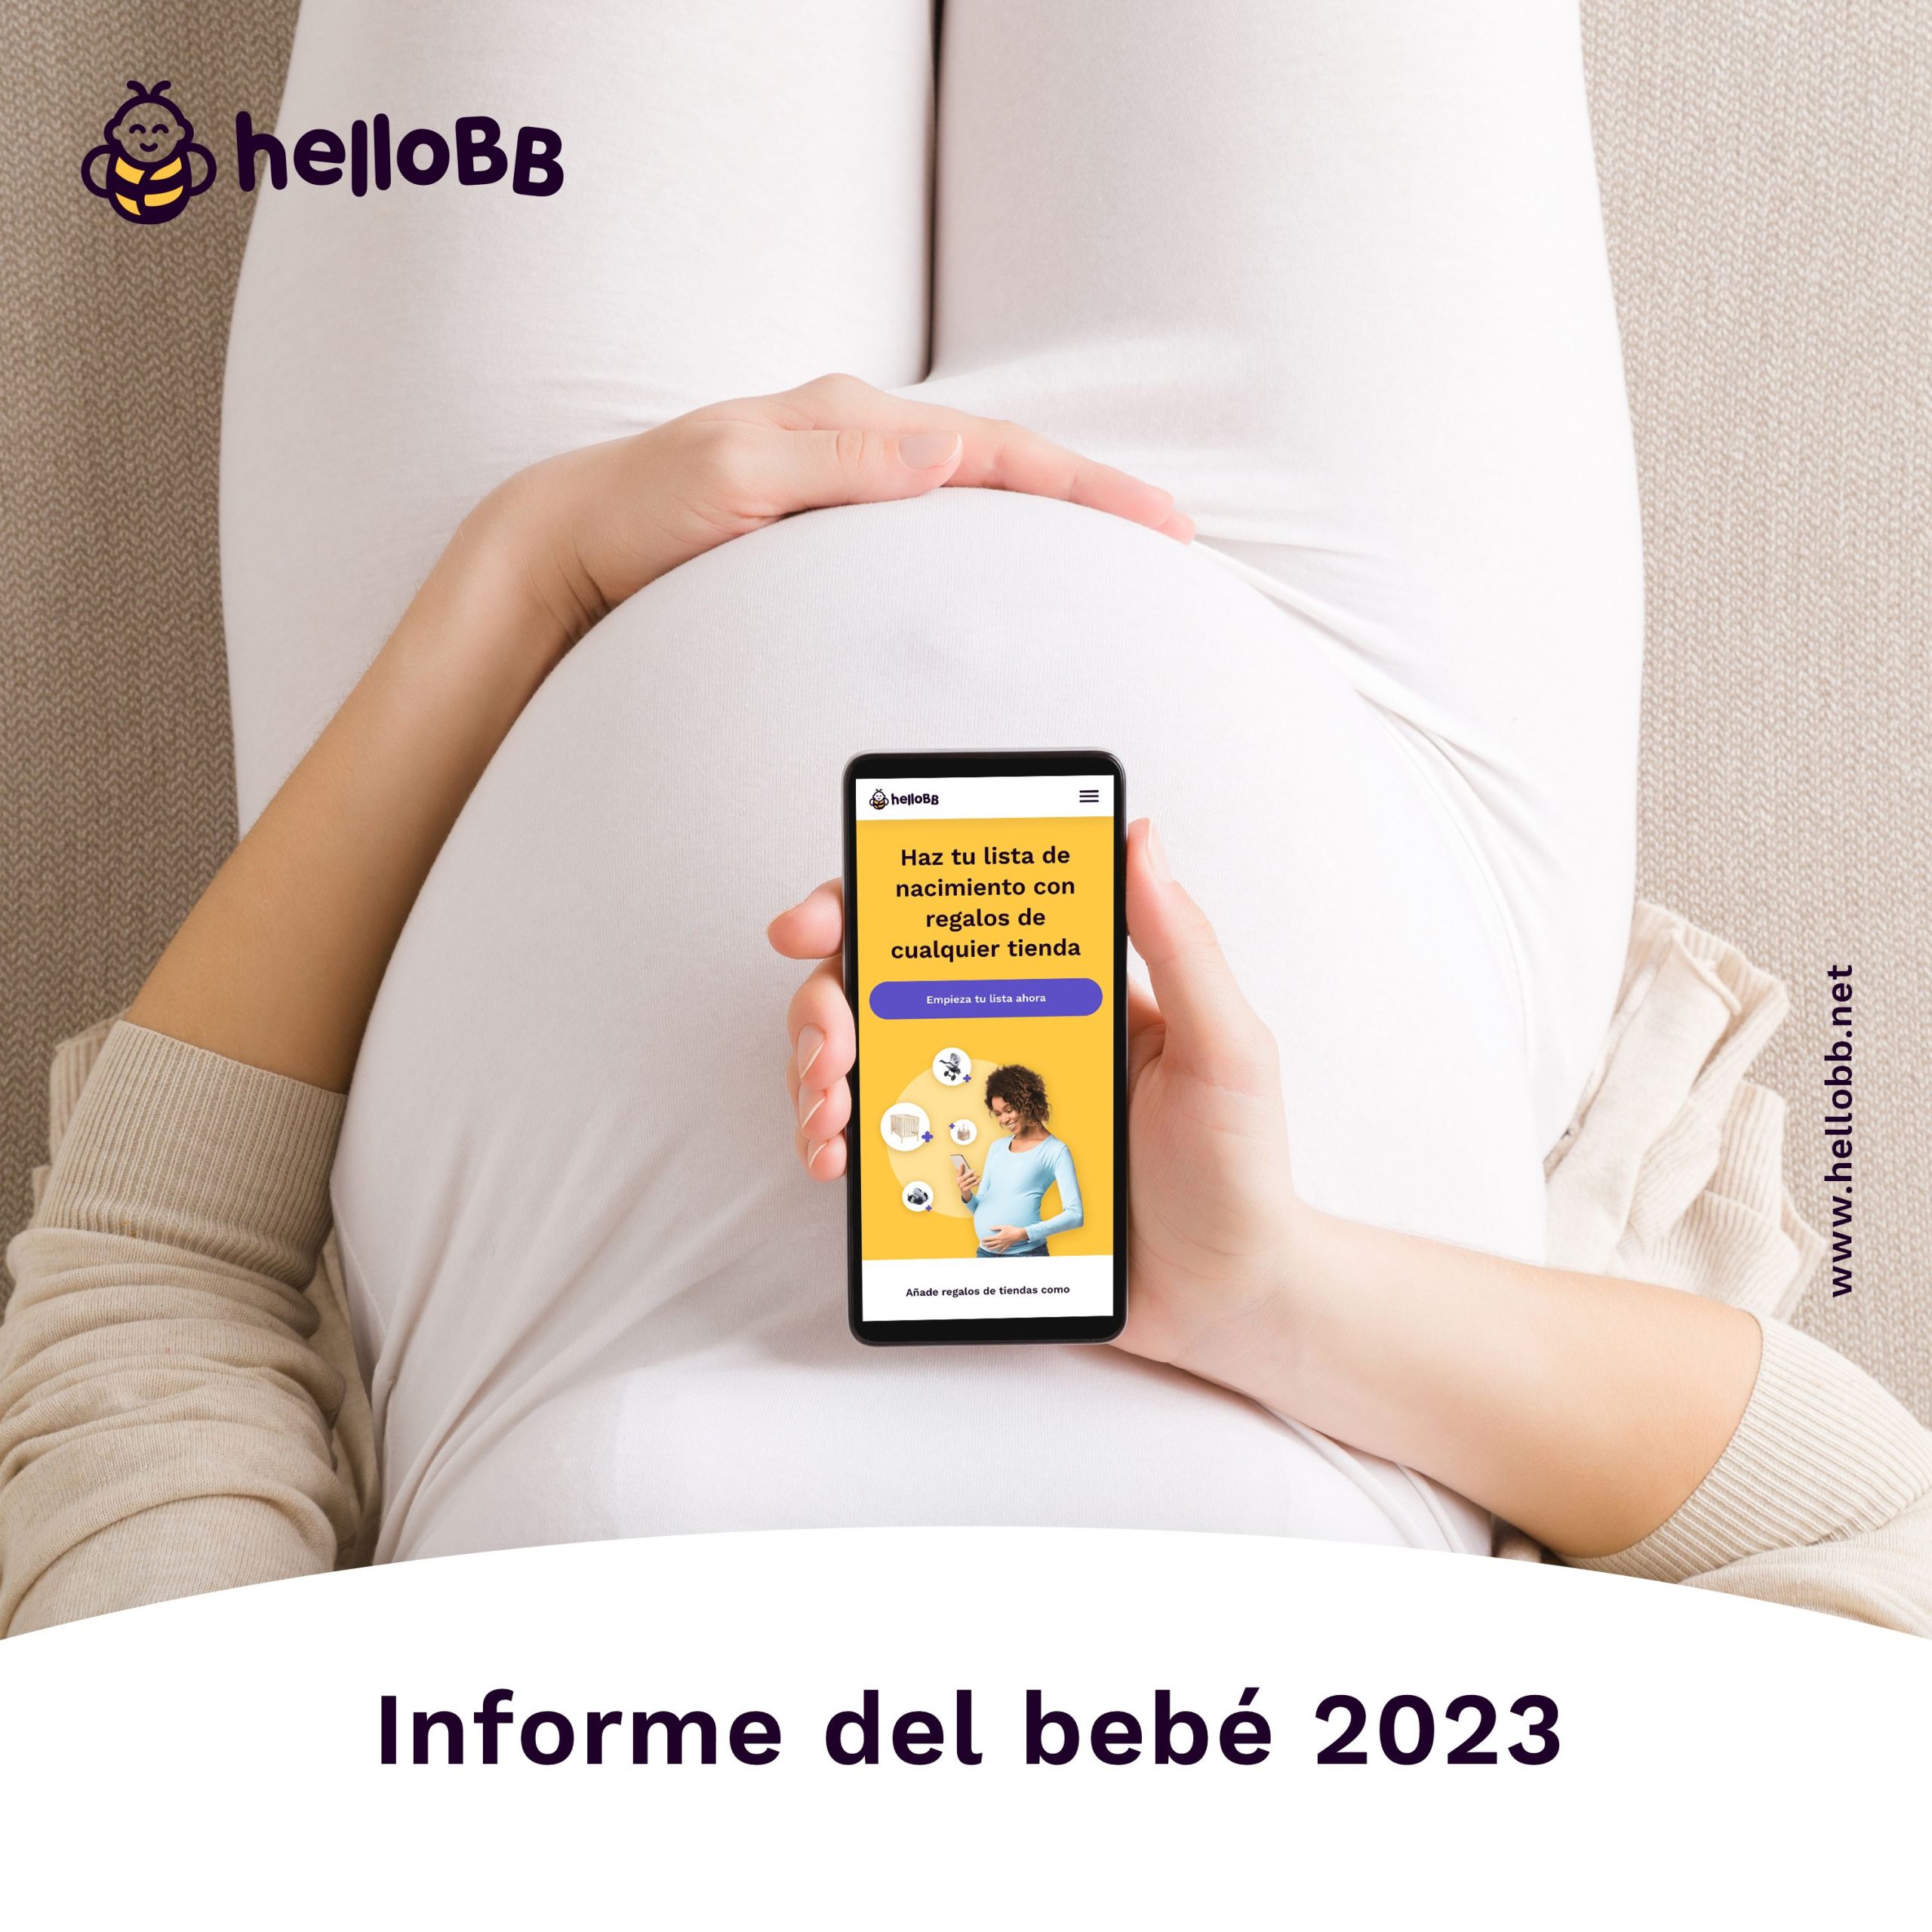 Informe Del Beb 2023 De Hellobb Scaled